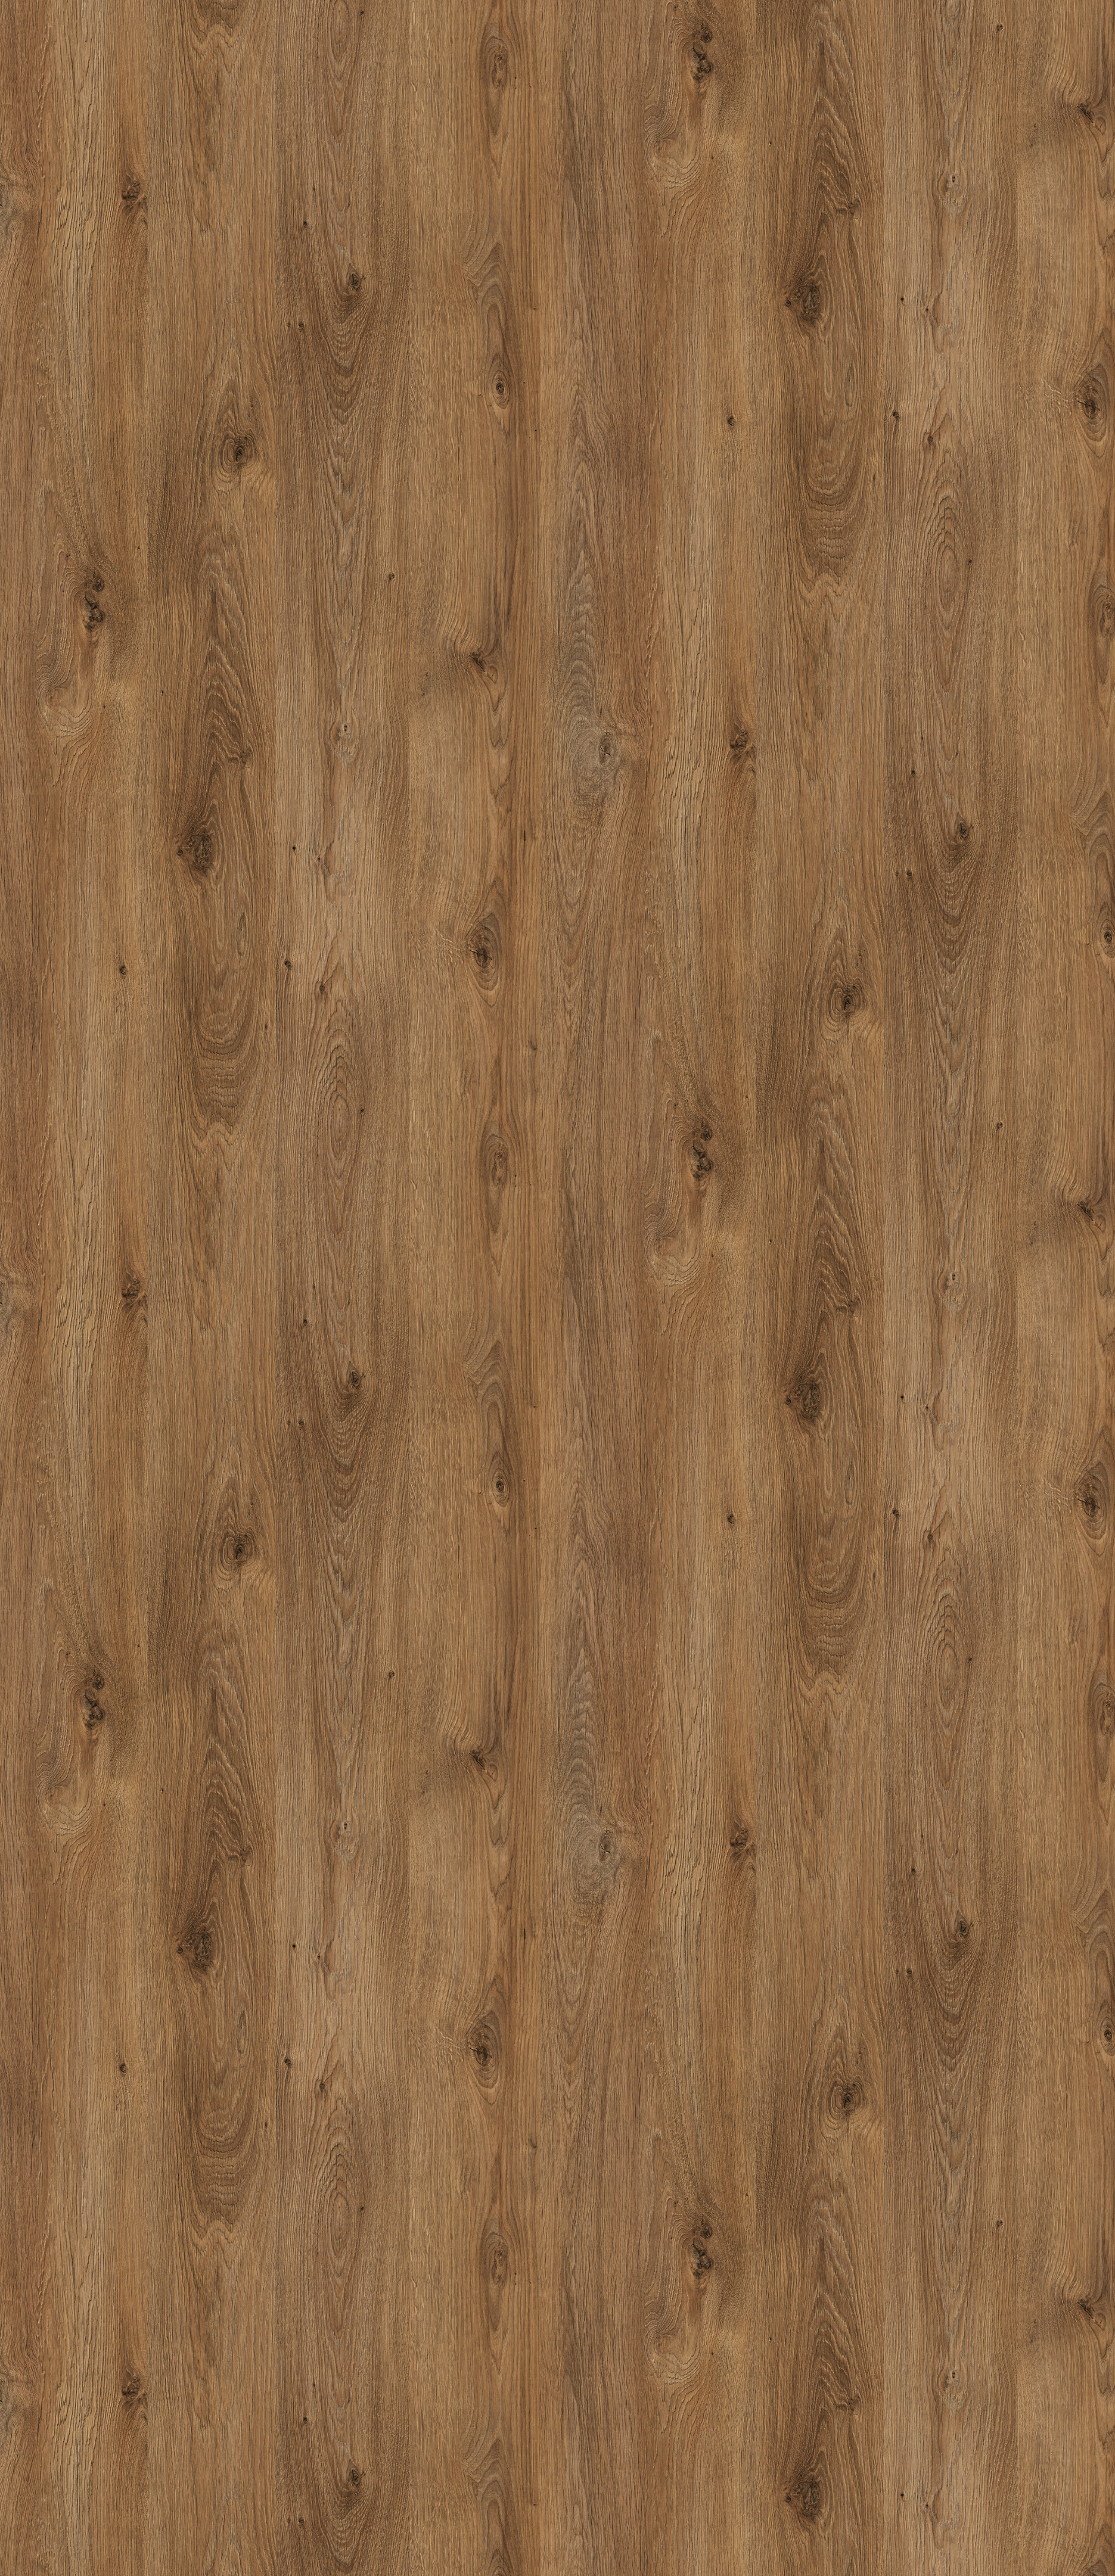 Image of Wickes Wood Effect Laminate Upstand - Pati Oak - 3m